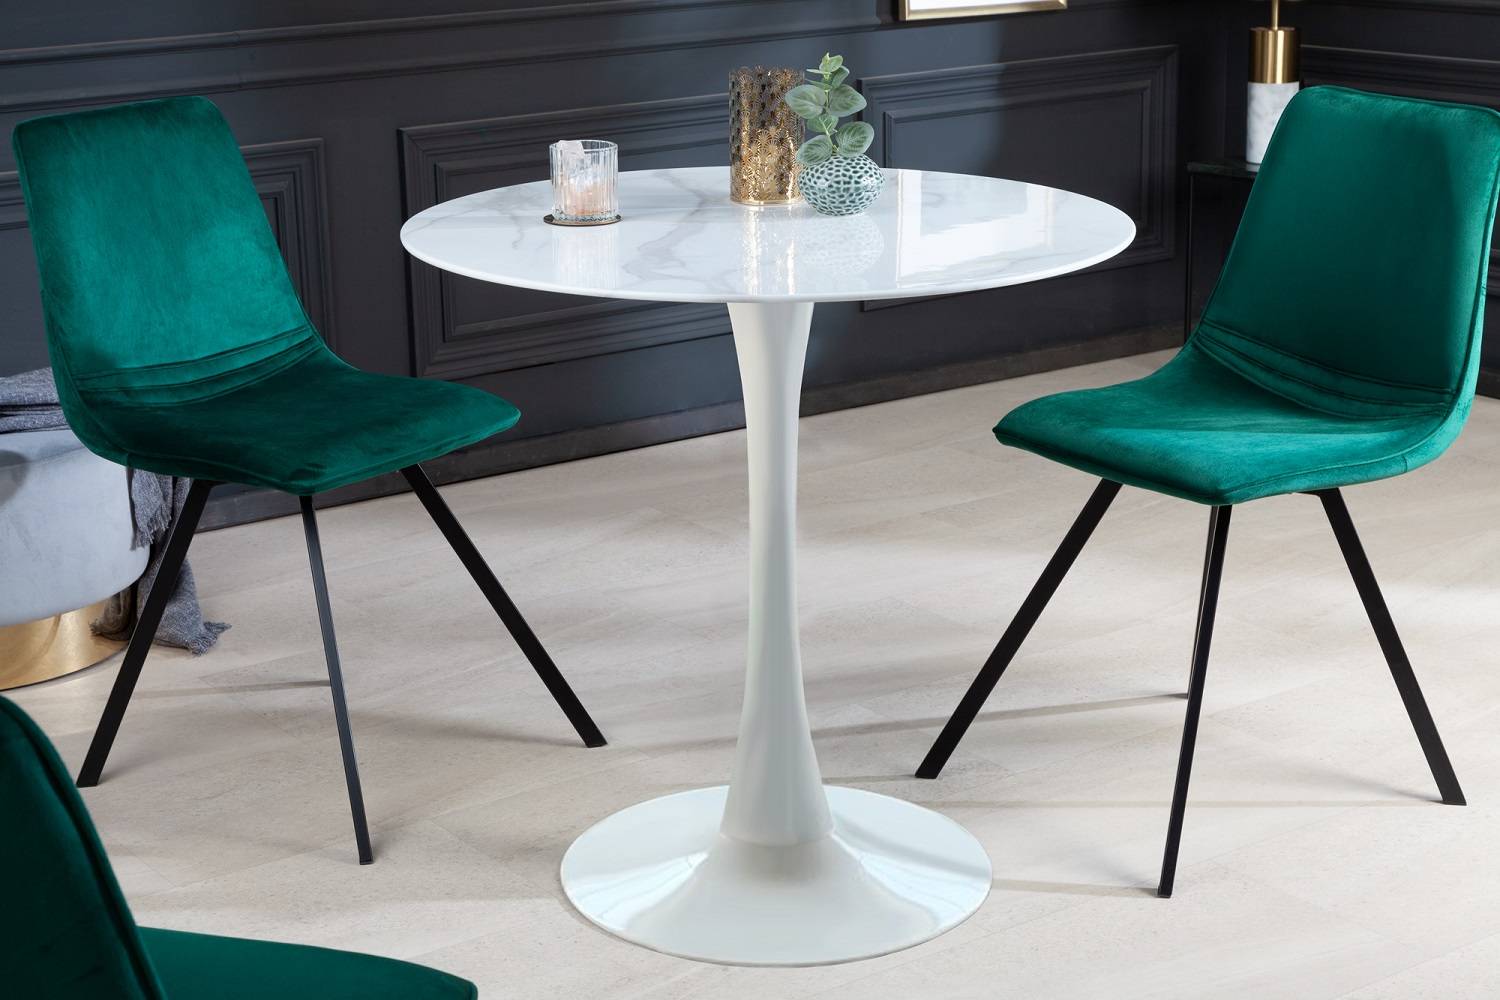 LuxD Kulatý jídelní stůl Saima 80 cm bílý - vzor mramor